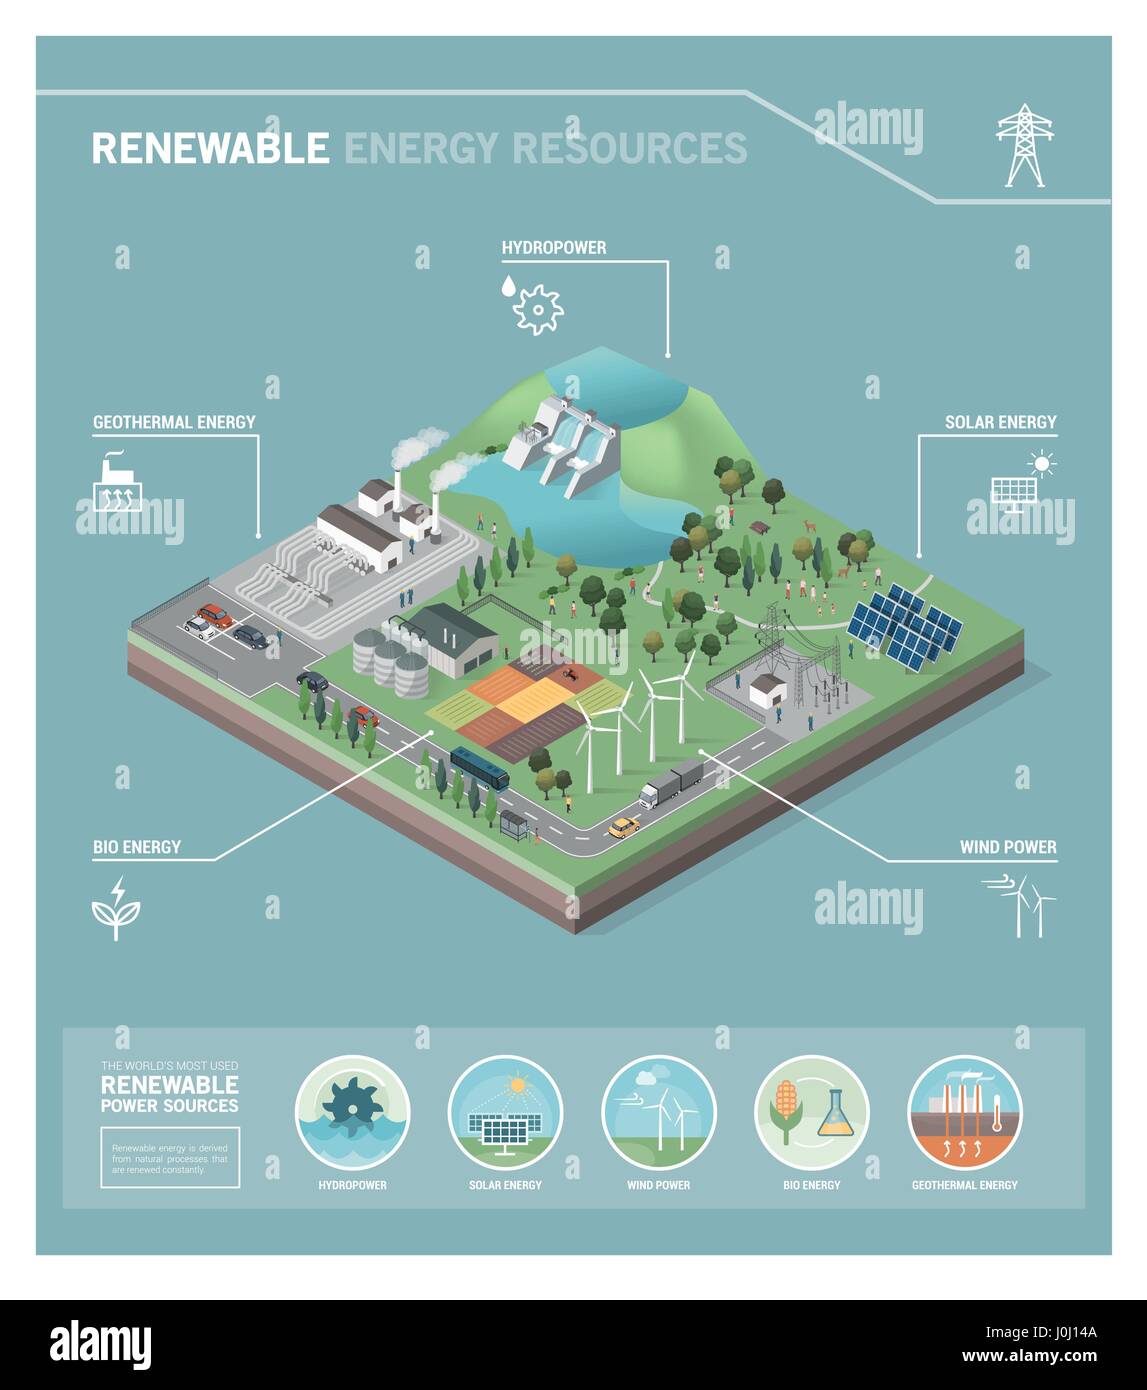 La production d'énergie verte et d'énergie renouvelable : l'hydroélectricité, la géothermie, l'énergie biologique, l'énergie éolienne et des panneaux solaires photovoltaïques Illustration de Vecteur